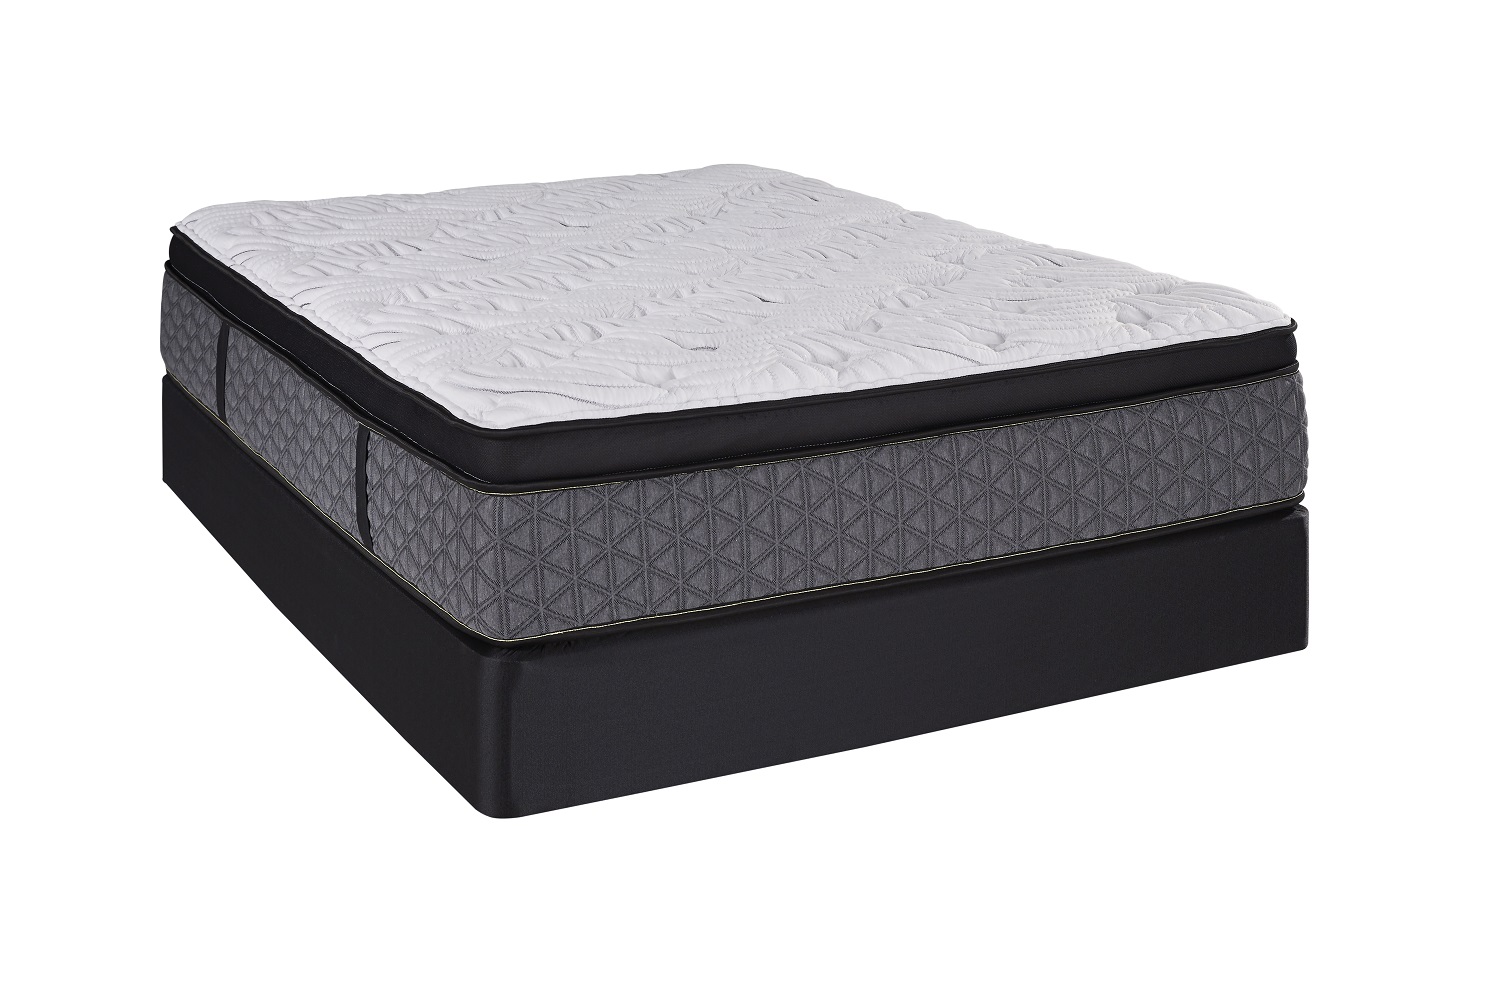 ComfortCare Pillow Top Mattress is the best mattress for lightweight sleepers.